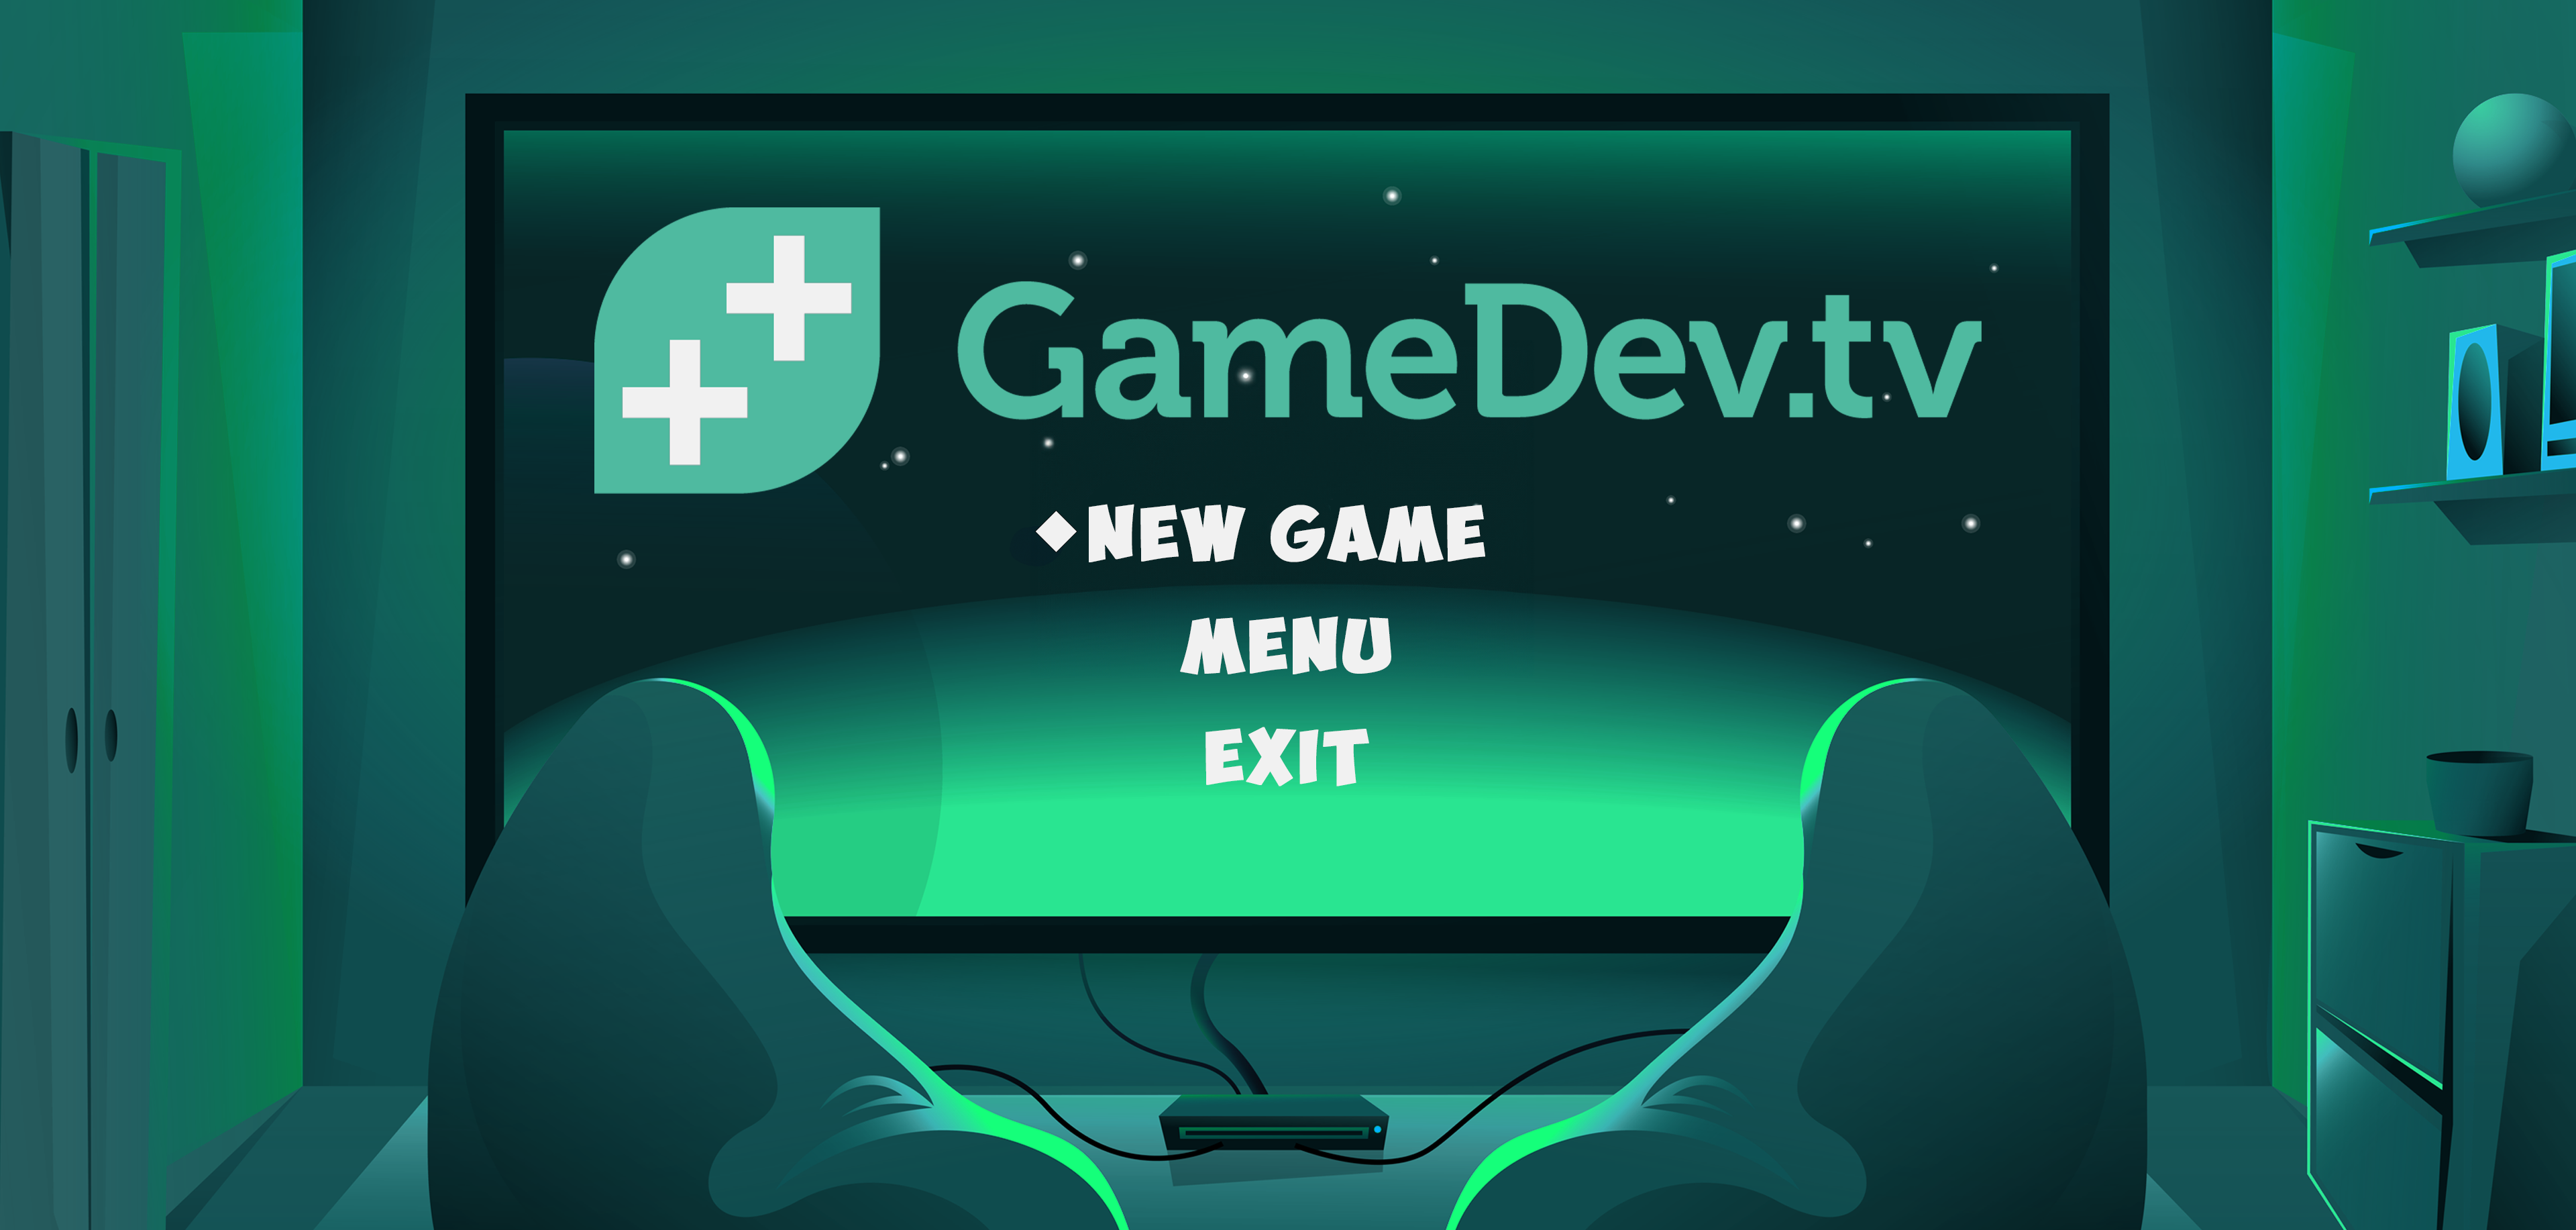 GameDev.tv gamejam starts today